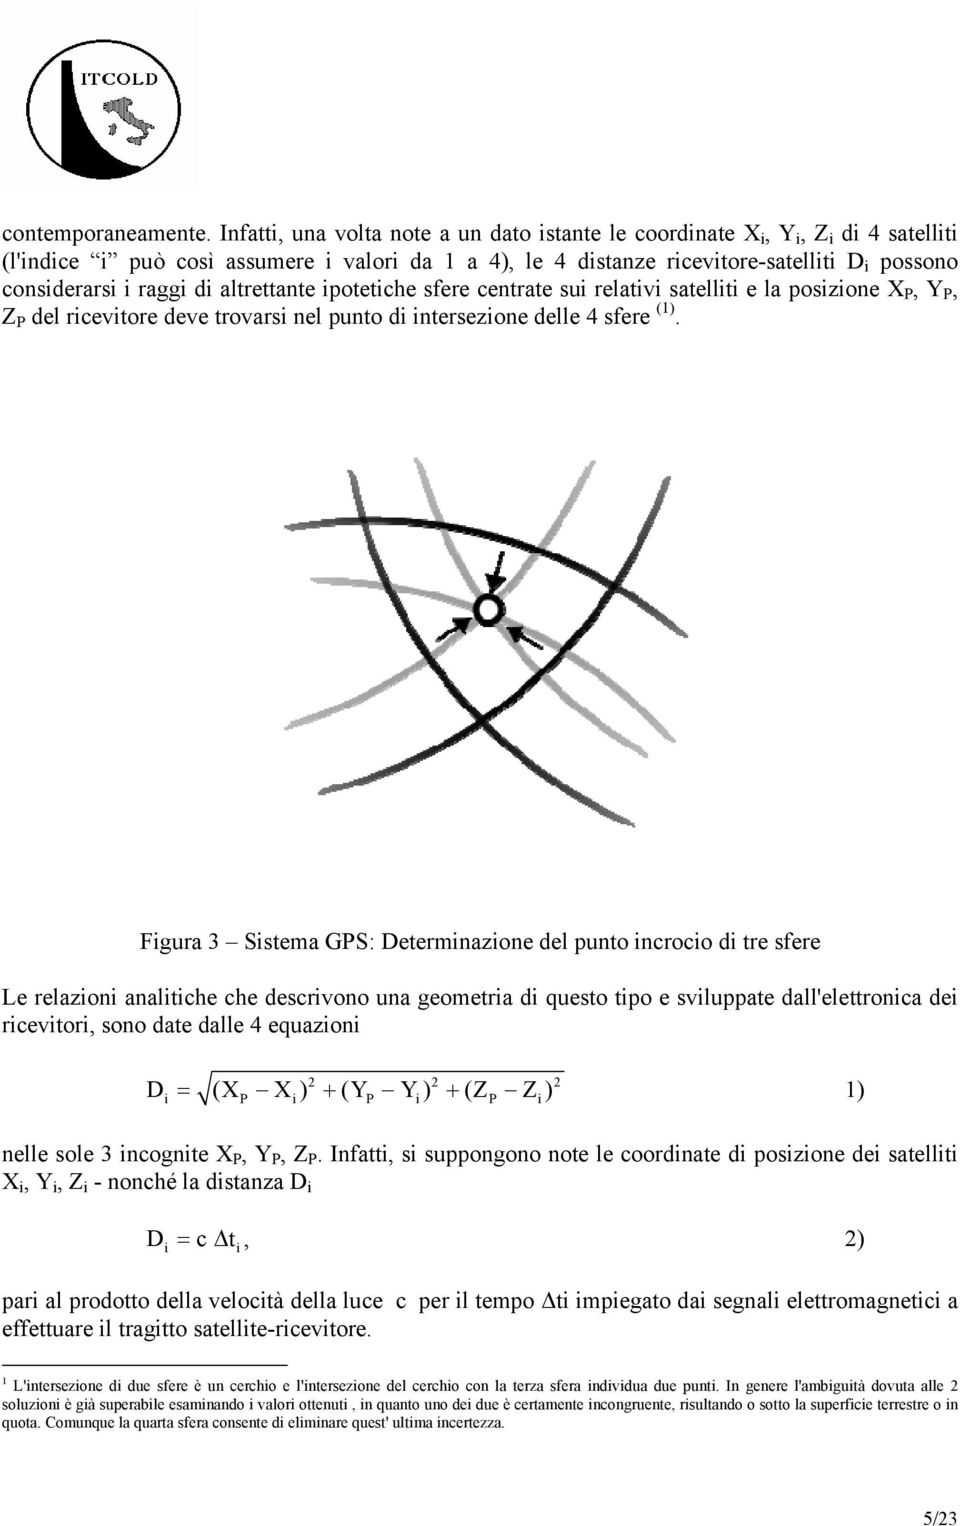 raggi di altrettante ipotetiche sfere centrate sui relativi satelliti e la posizione X P, Y P, Z P del ricevitore deve trovarsi nel punto di intersezione delle 4 sfere (1).